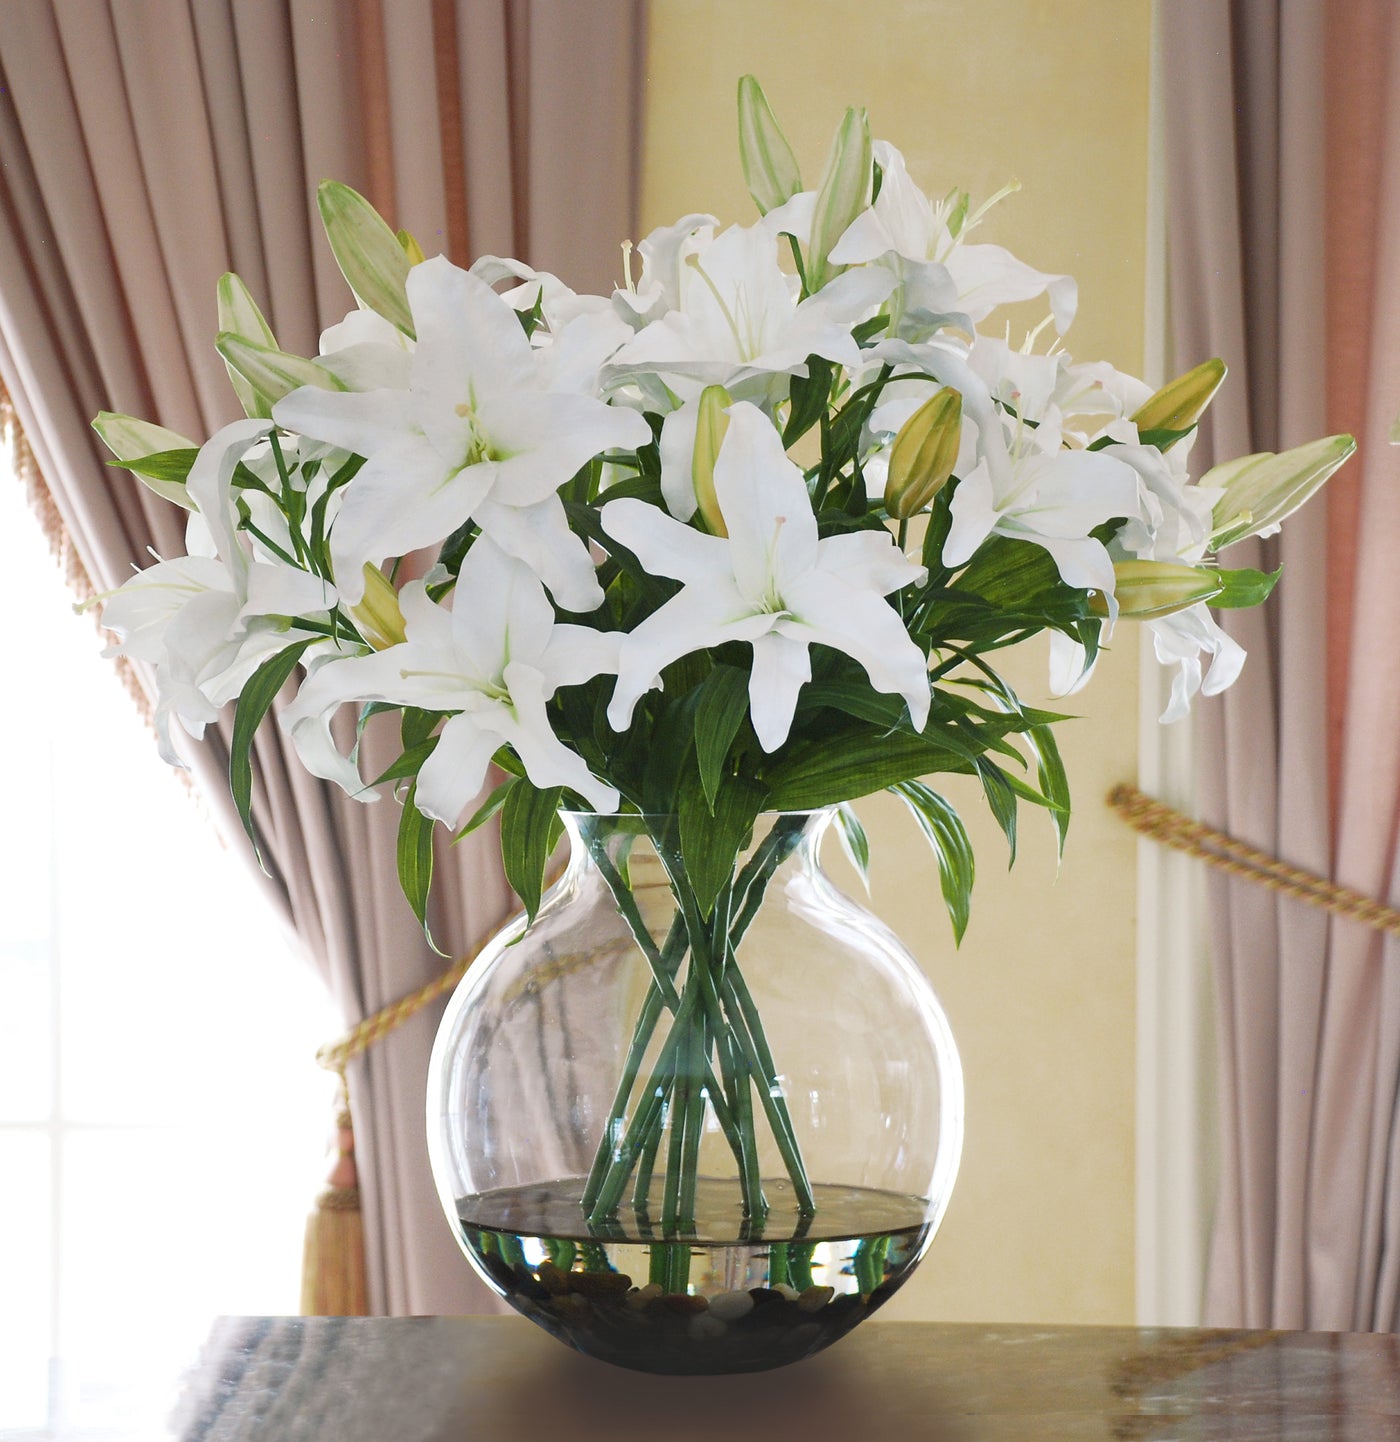 WHITE LILY CASABLANCA CENTERPIECE (DP745-WW) - Winward Home faux floral arrangements